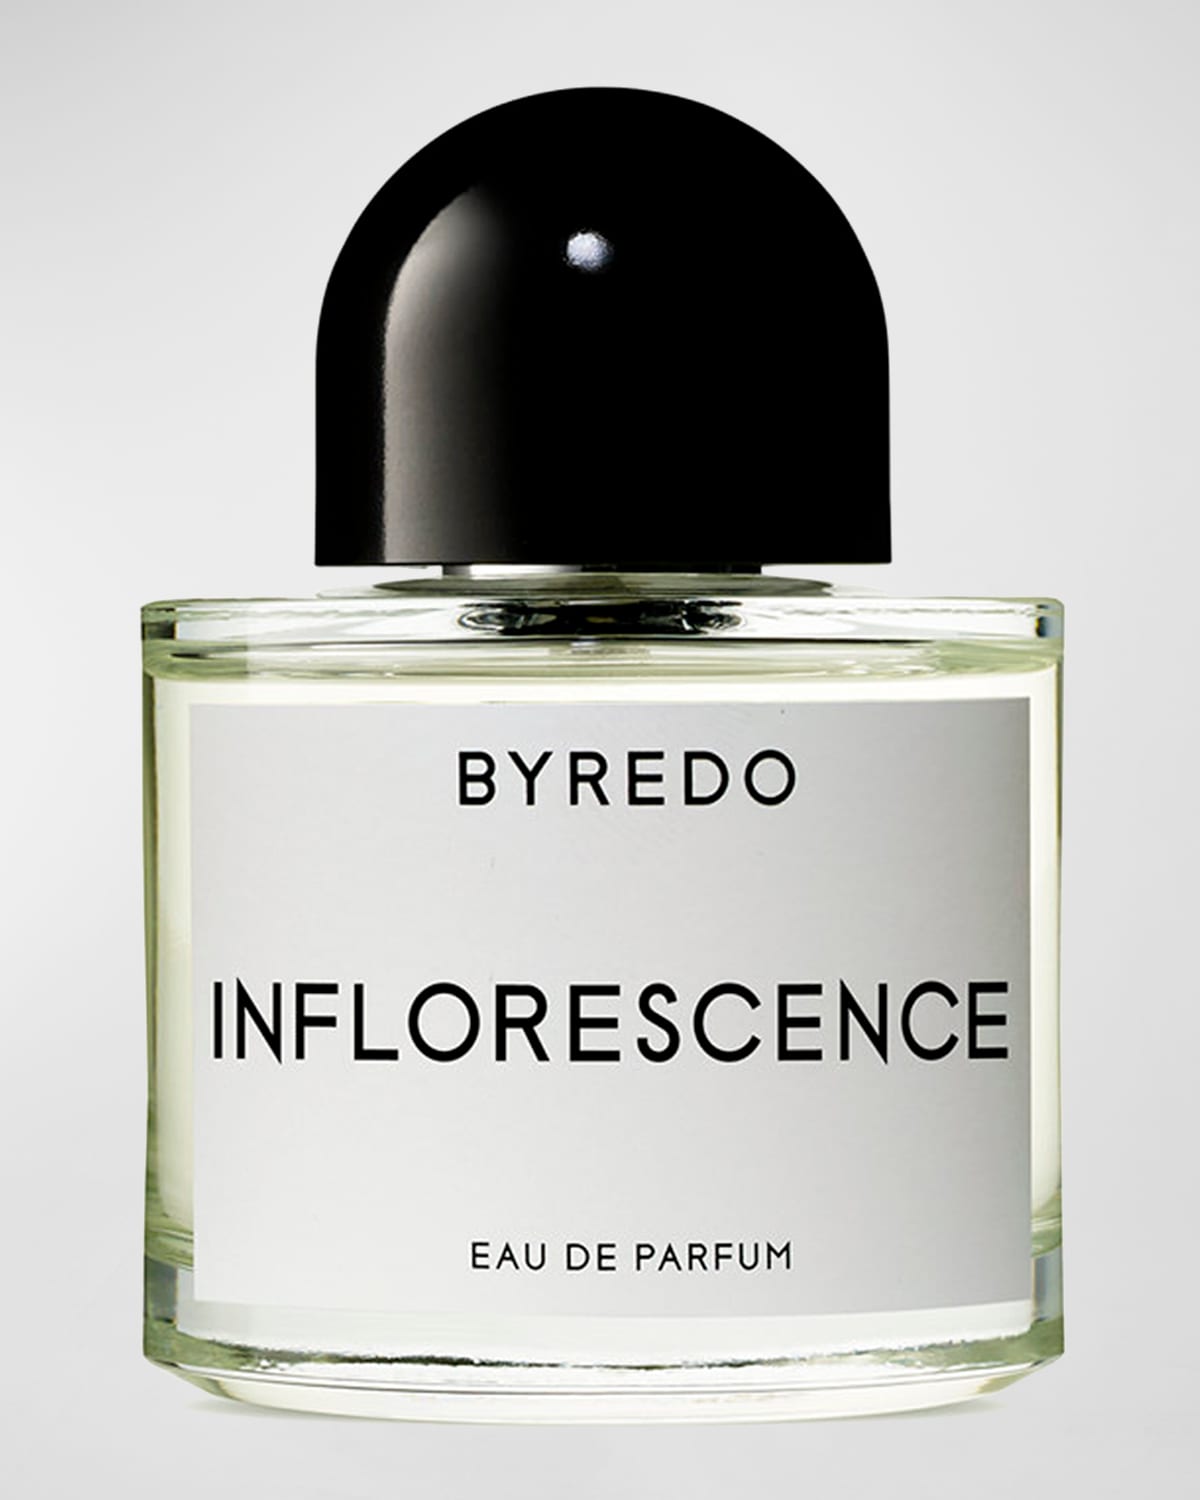 Inflorescence Eau de Parfum, 1.7 oz.